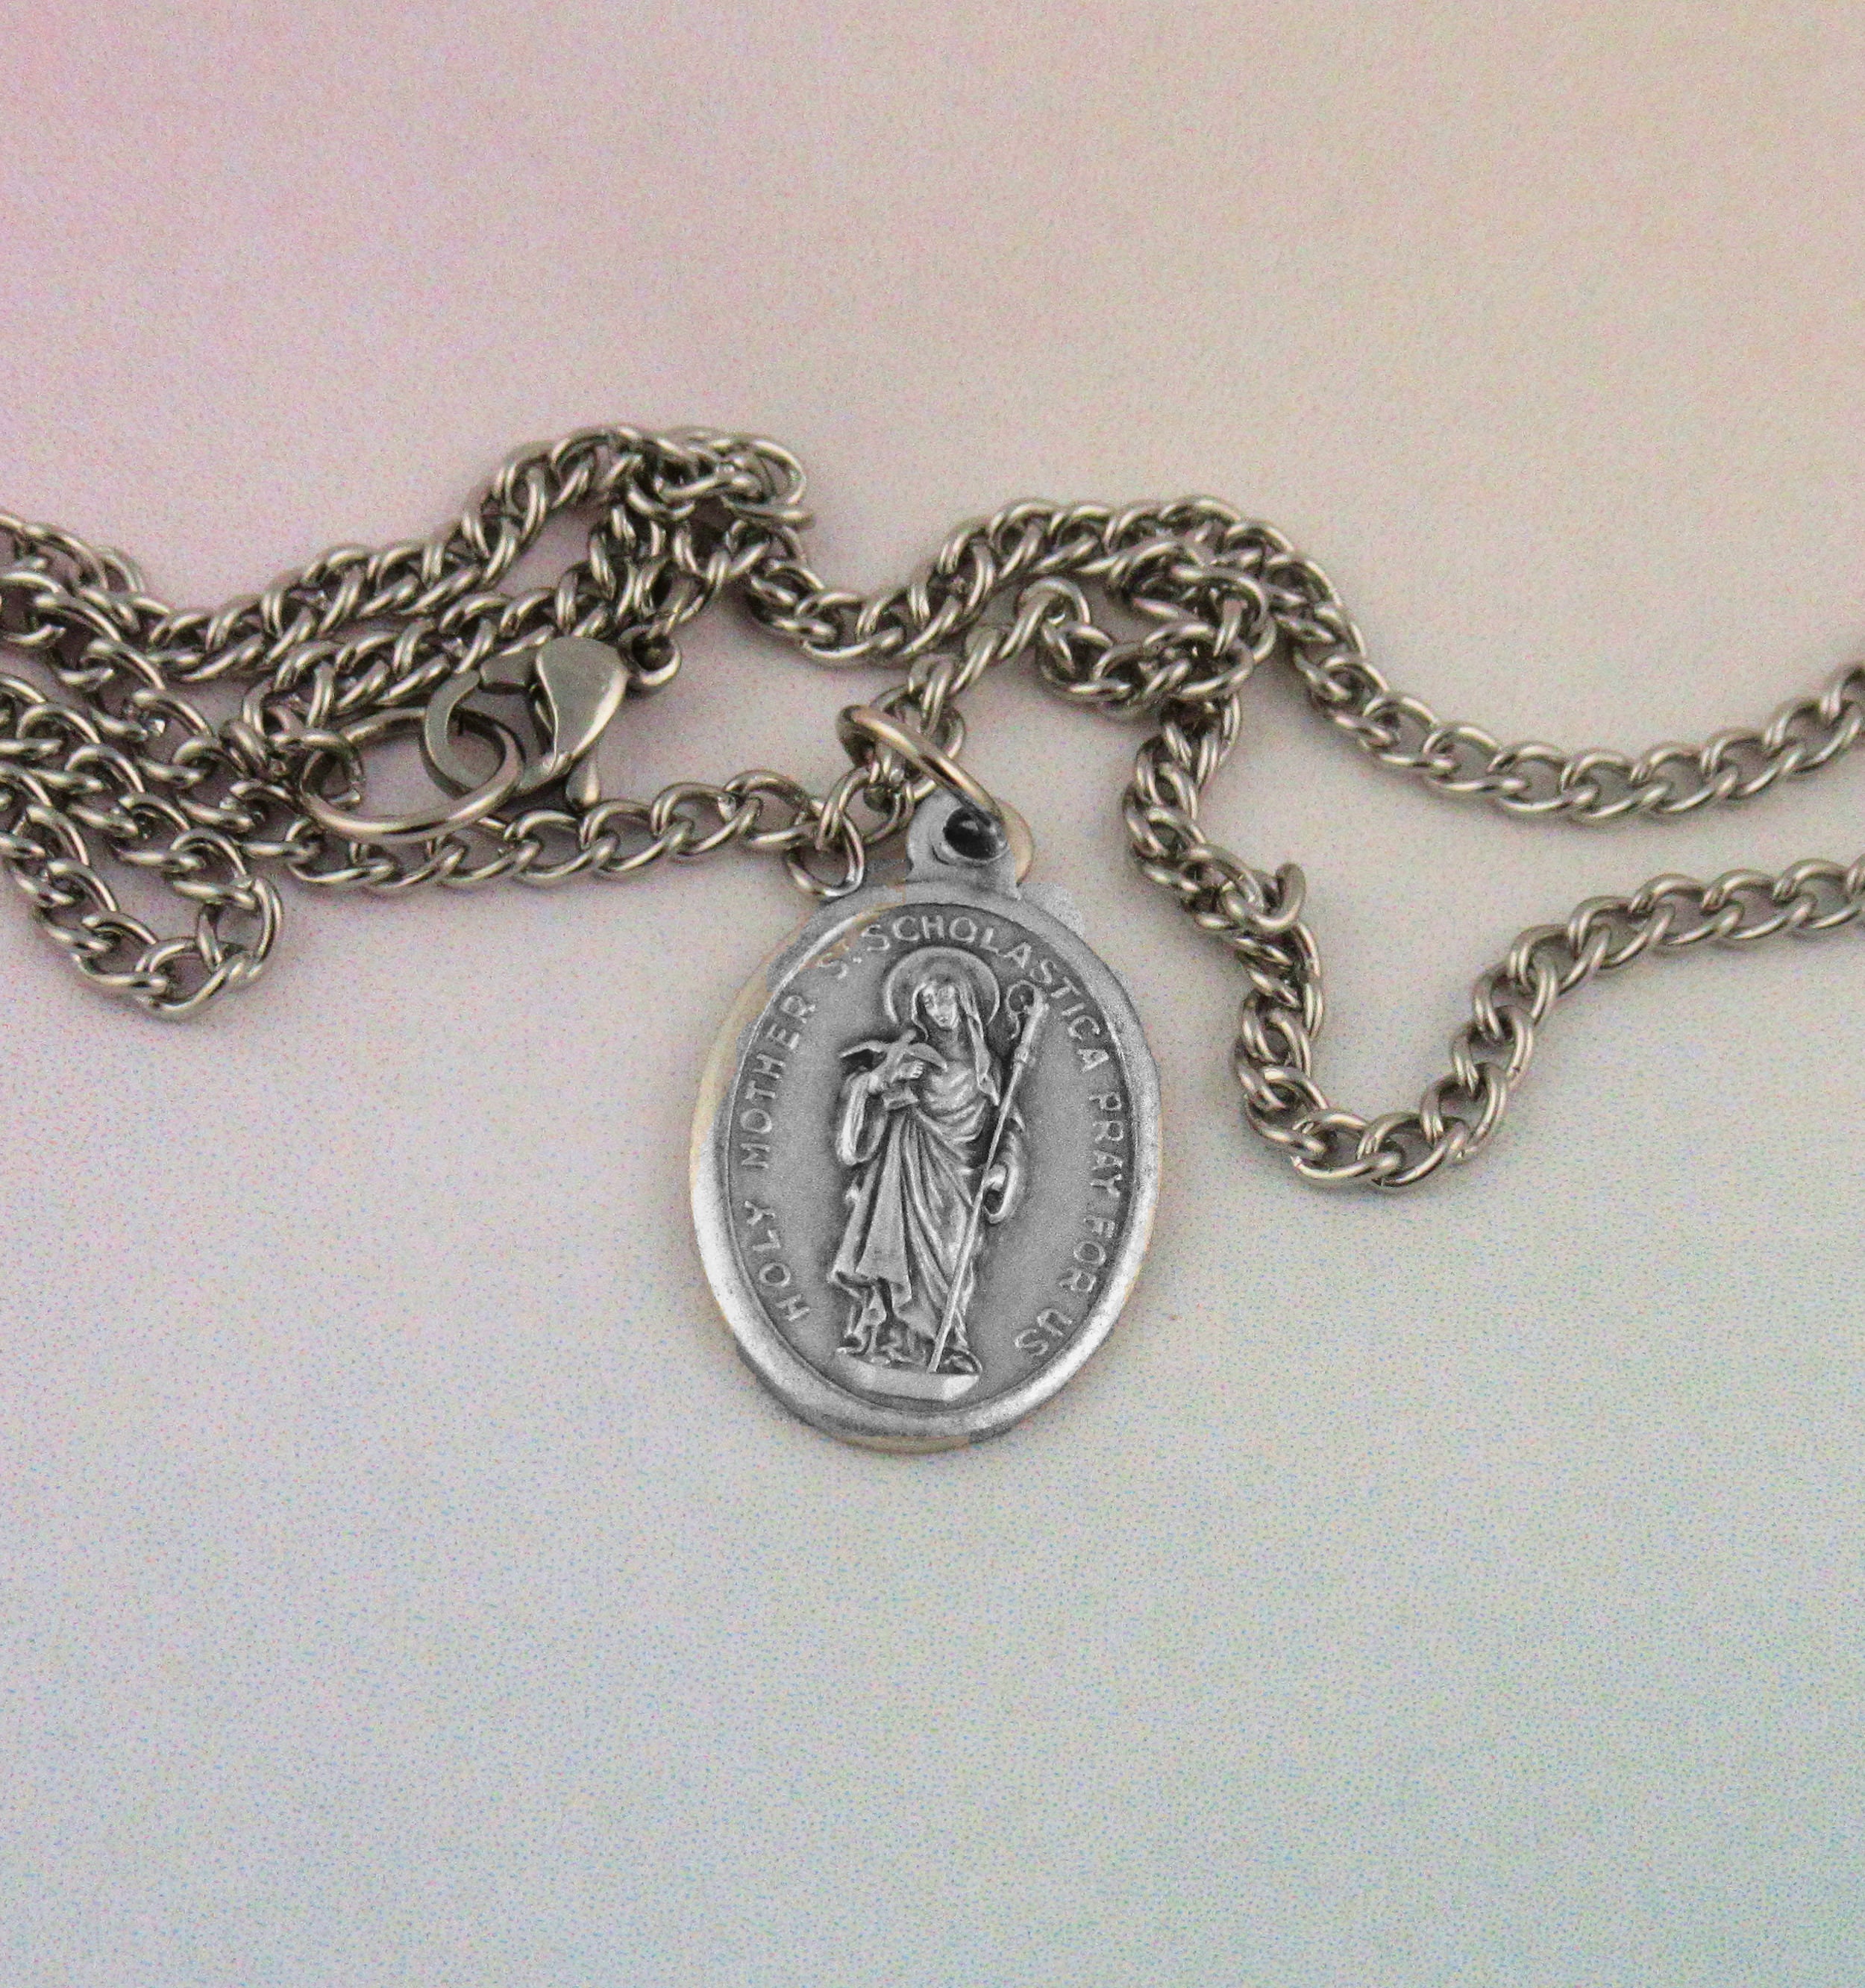 St Scholastica Medal Necklace Patron Saint of Nuns Education - Etsy